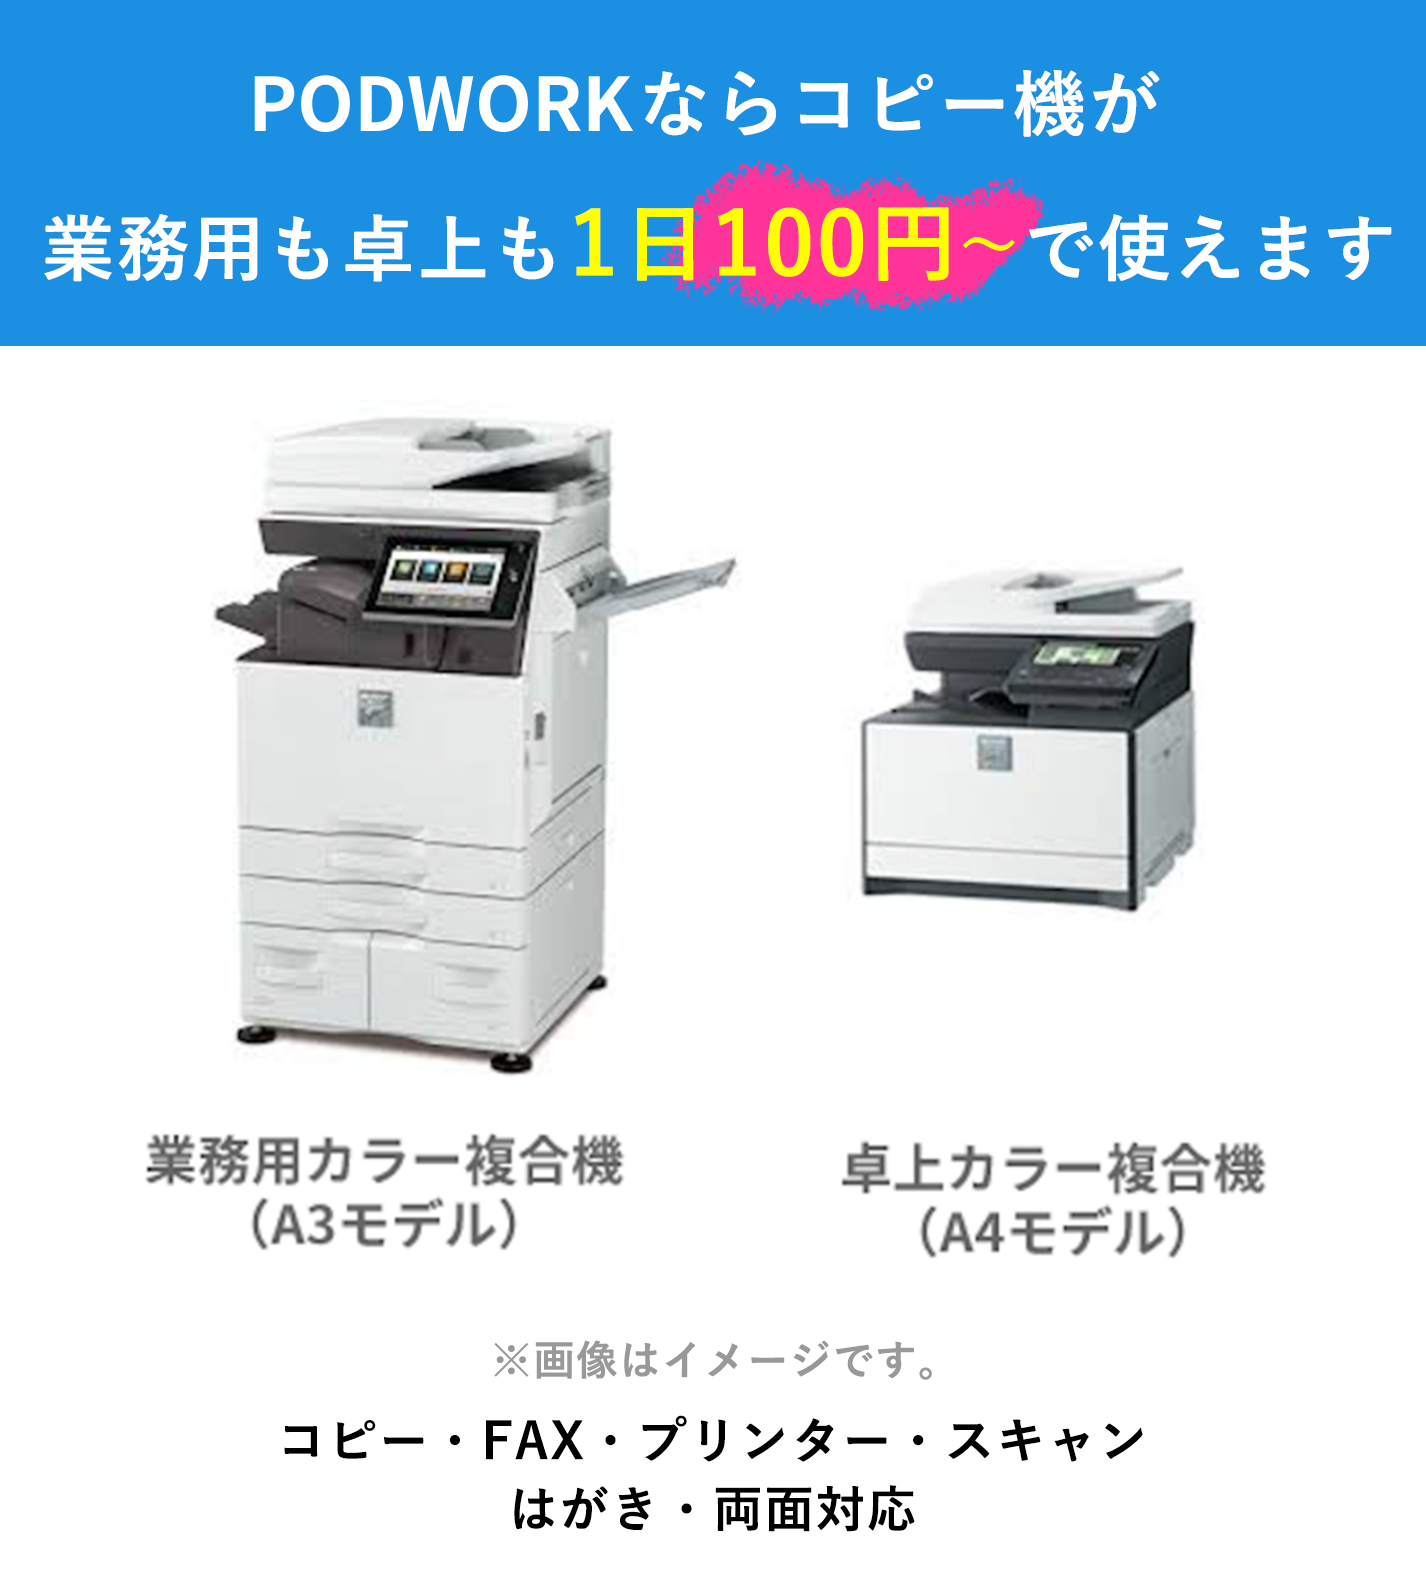 PODWORKならコピー機が業務用も卓上も100円で使えます